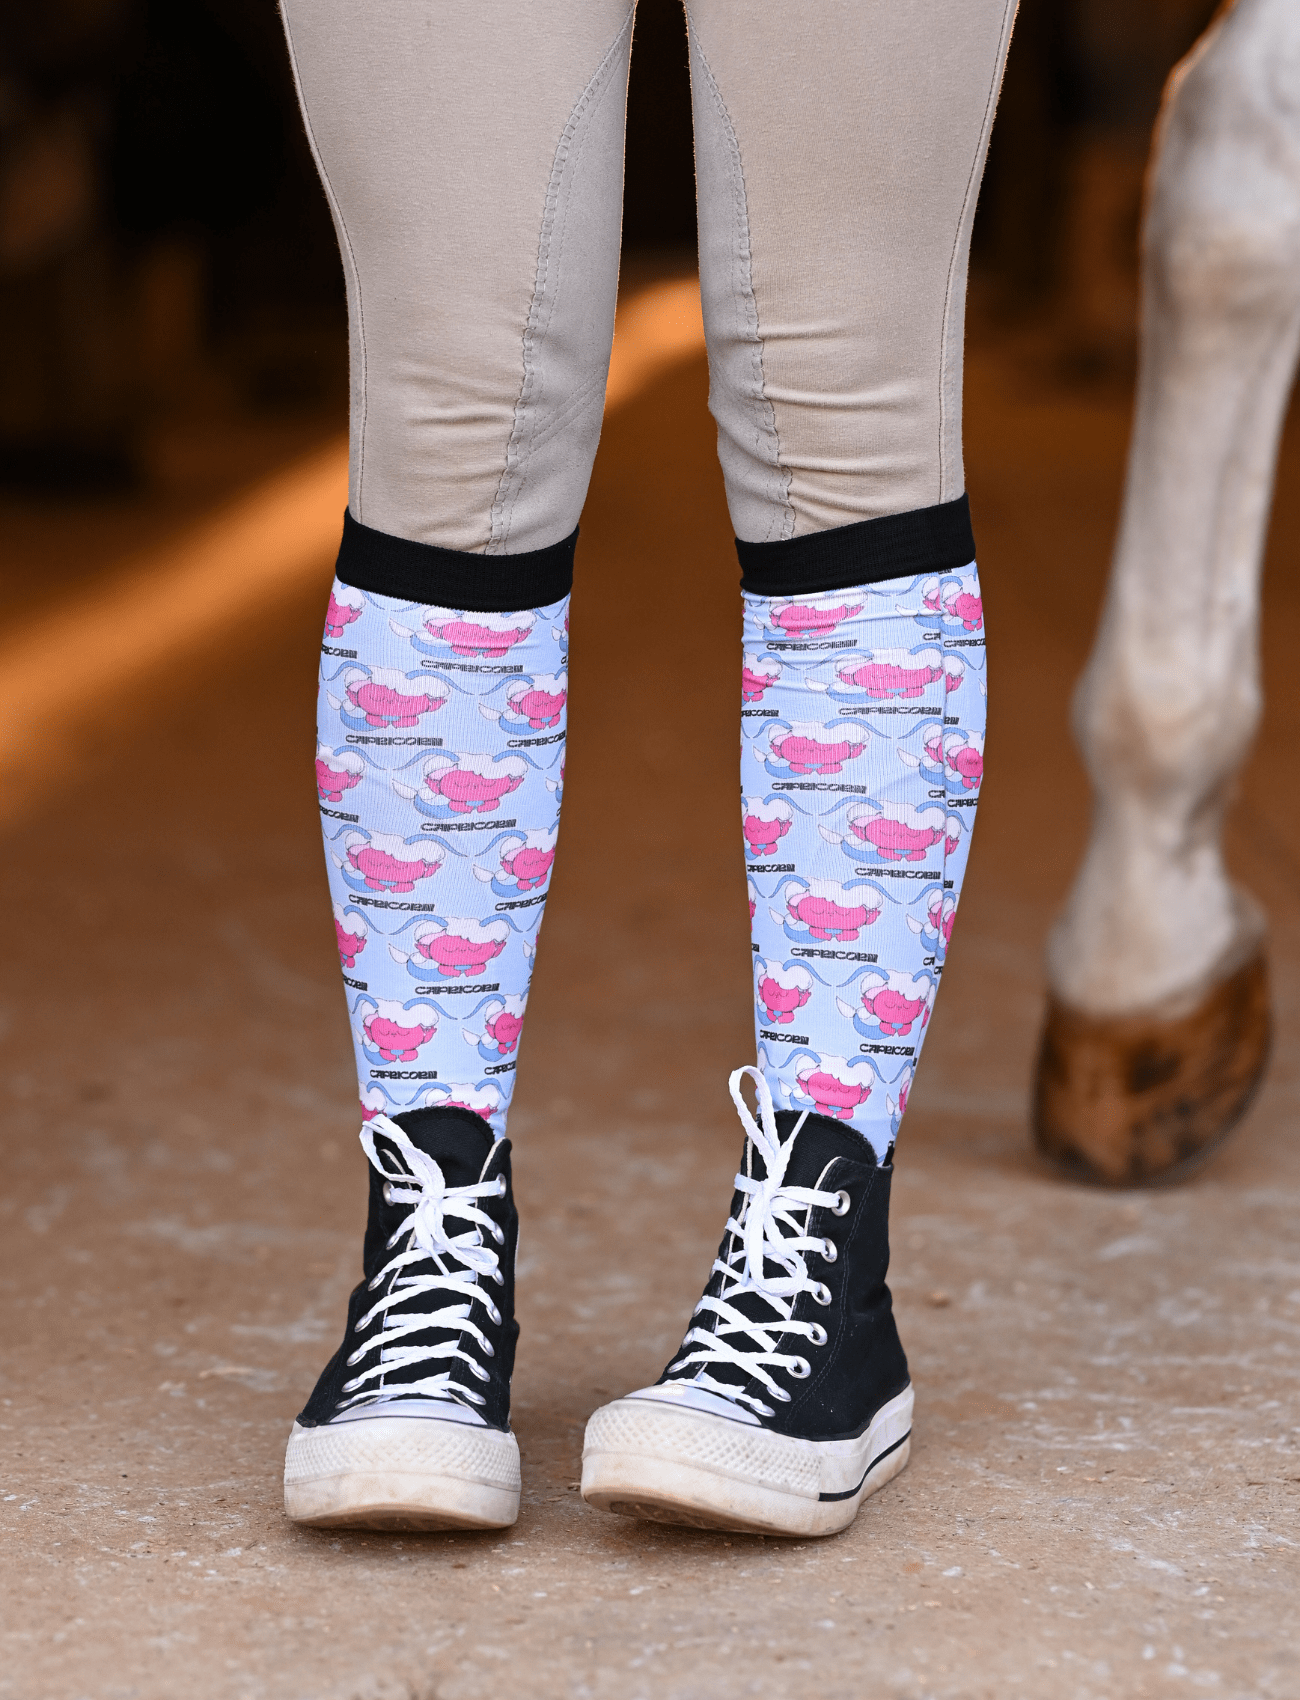 D&S LIMITED EDITION Limited Edition Limited Mushroom Capricorn Socks equestrian boot socks boot socks thin socks riding socks pattern socks tall socks funny socks knee high socks horse socks horse show socks